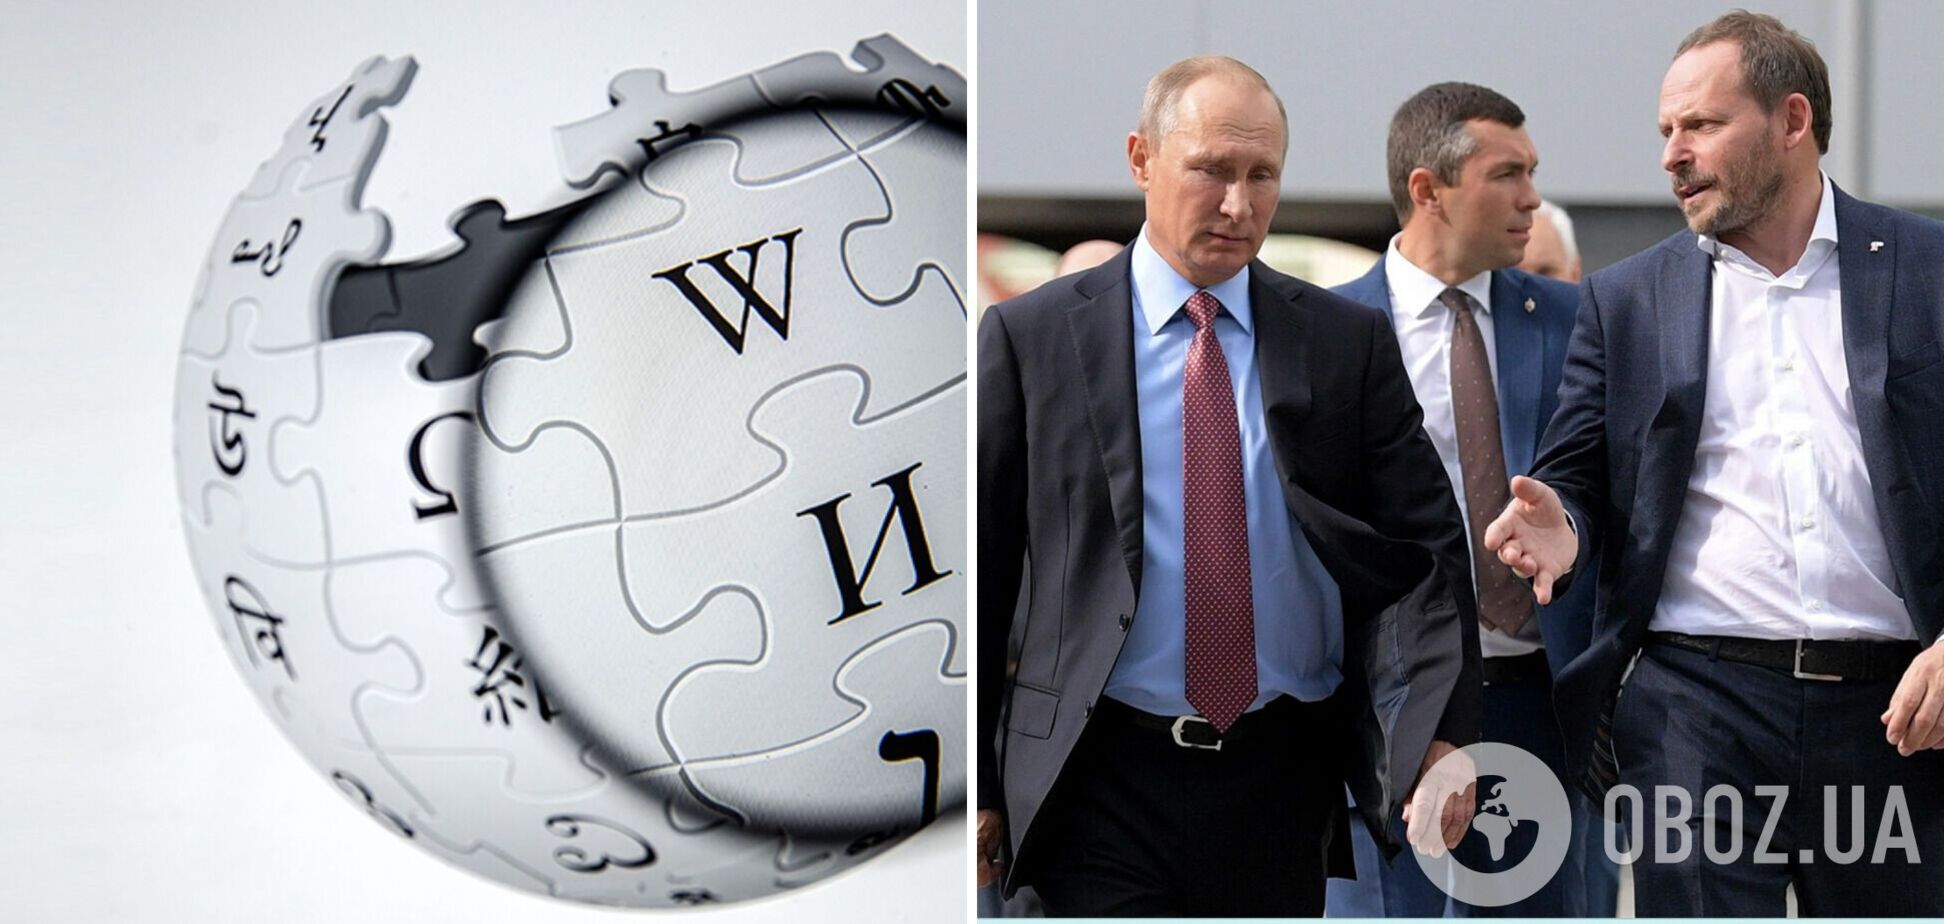 Российская 'элита' зачищает в 'Википедии' данные о санкциях, связях с Кремлем, имуществе и даже гражданстве РФ – СМИ